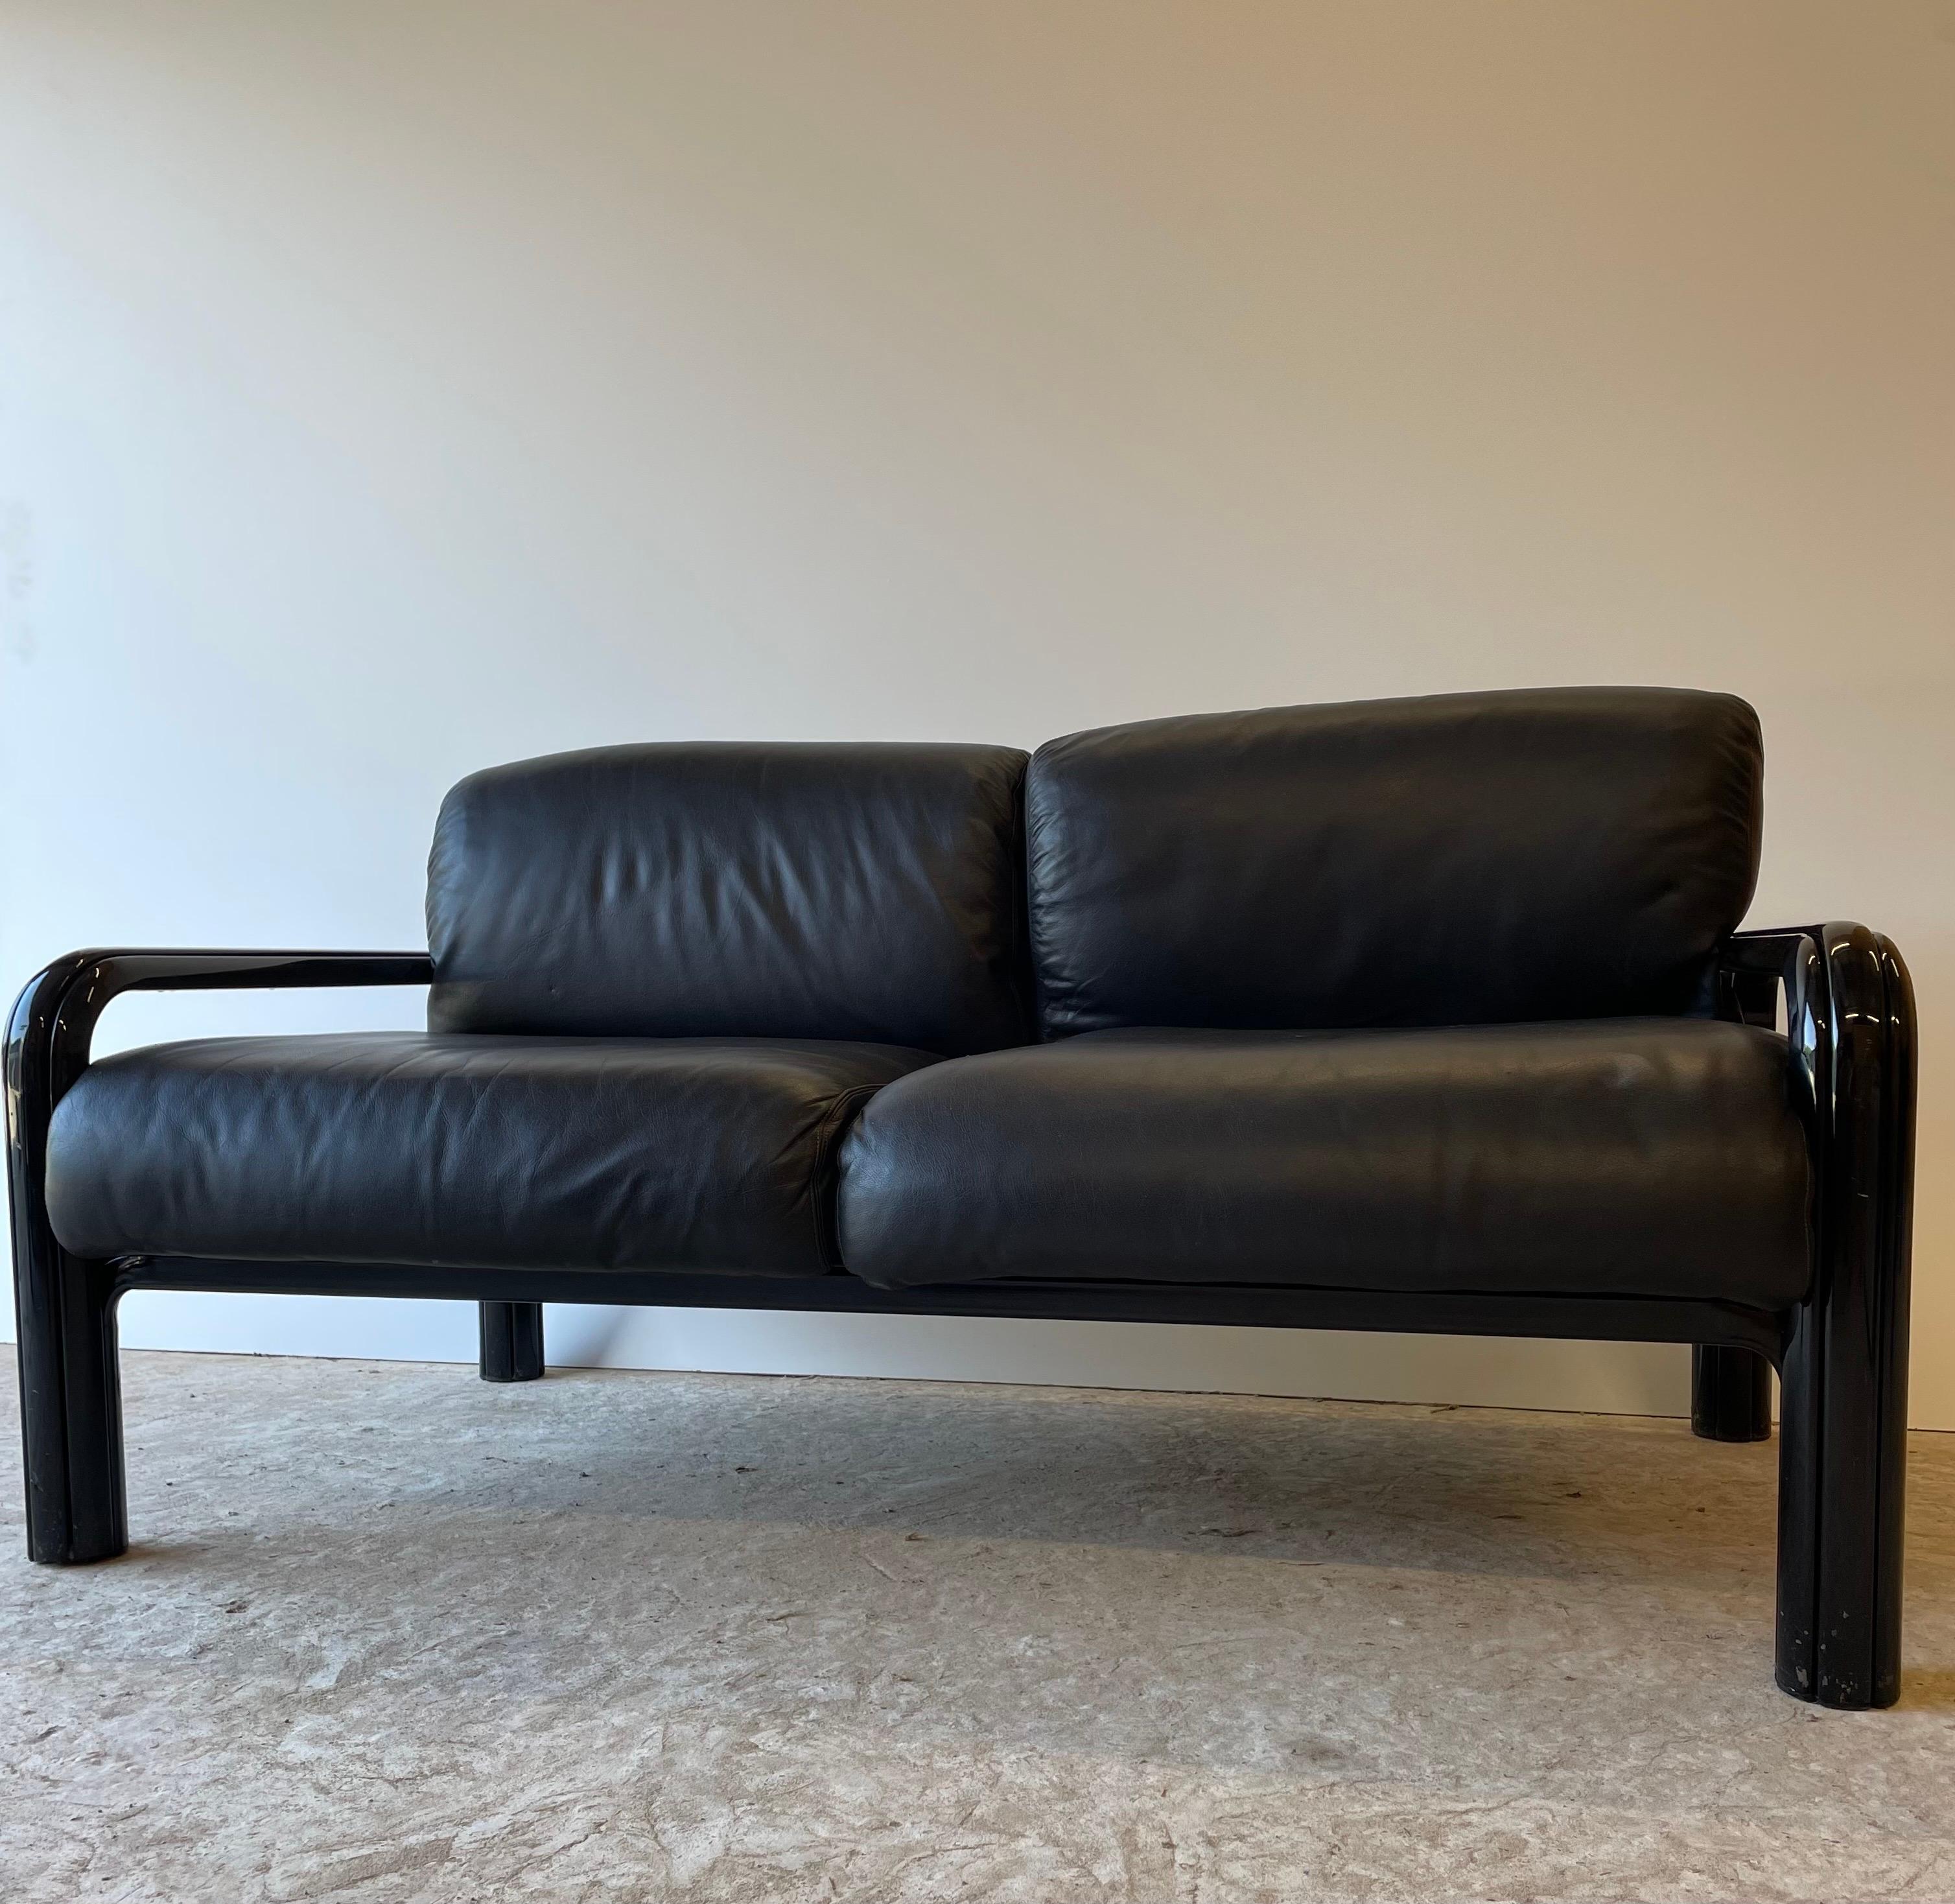 Was für ein Fund! Dieses Sofa ist eine absolute Rarität. Liebhaber erkennen es sofort, den Love Seat von Gae Aulenti. 

Das Sofa befindet sich im Originalzustand und wurde 1970 hergestellt.
Wie auf den Bildern zu erkennen ist, befindet sich der